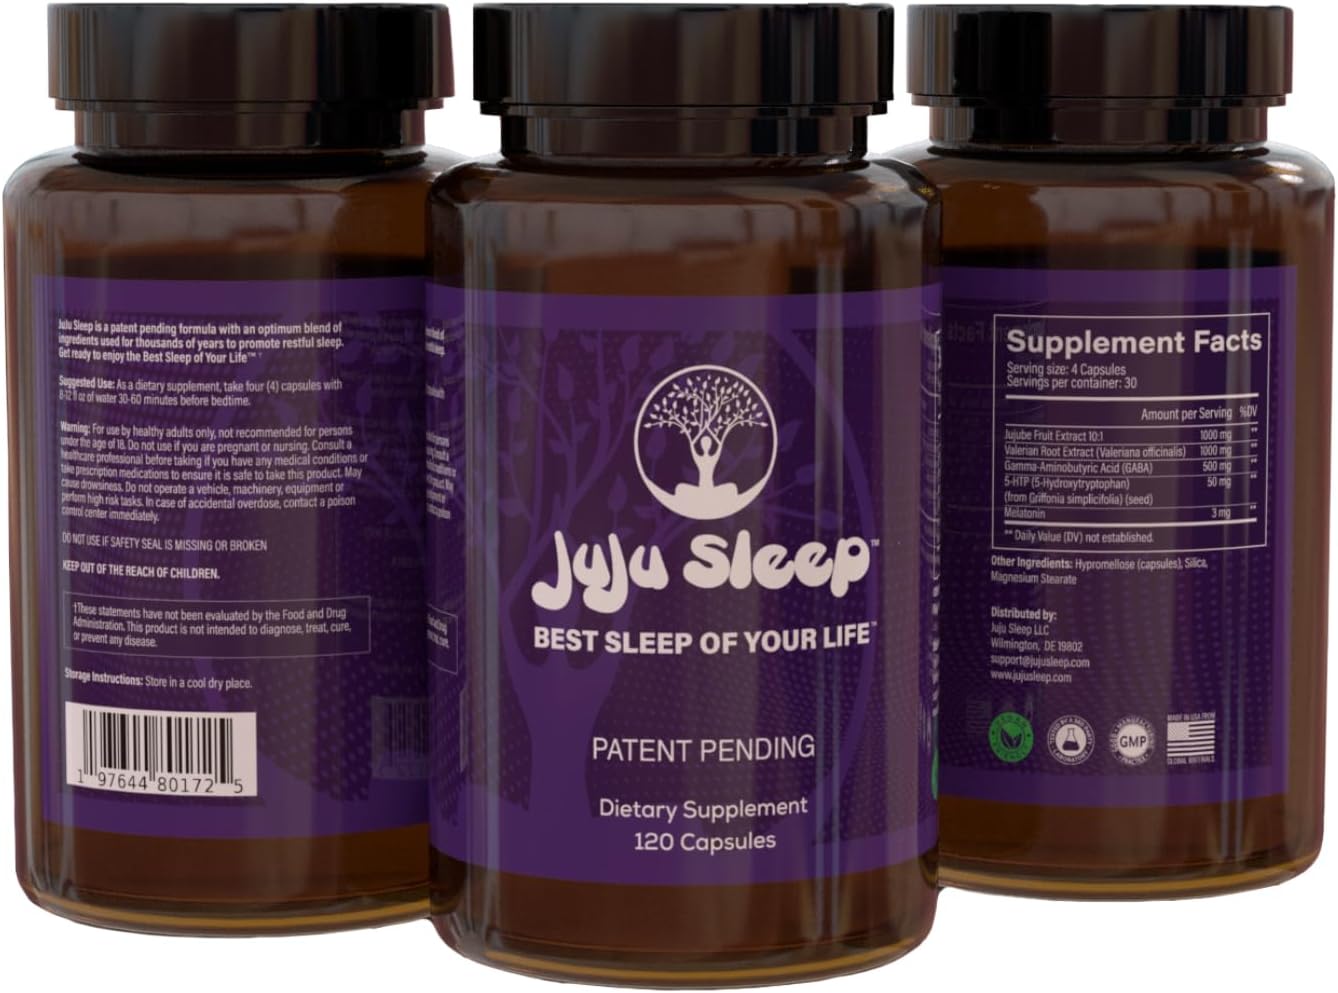 JuJu Sleep - Natural Sleep Aid Supplement